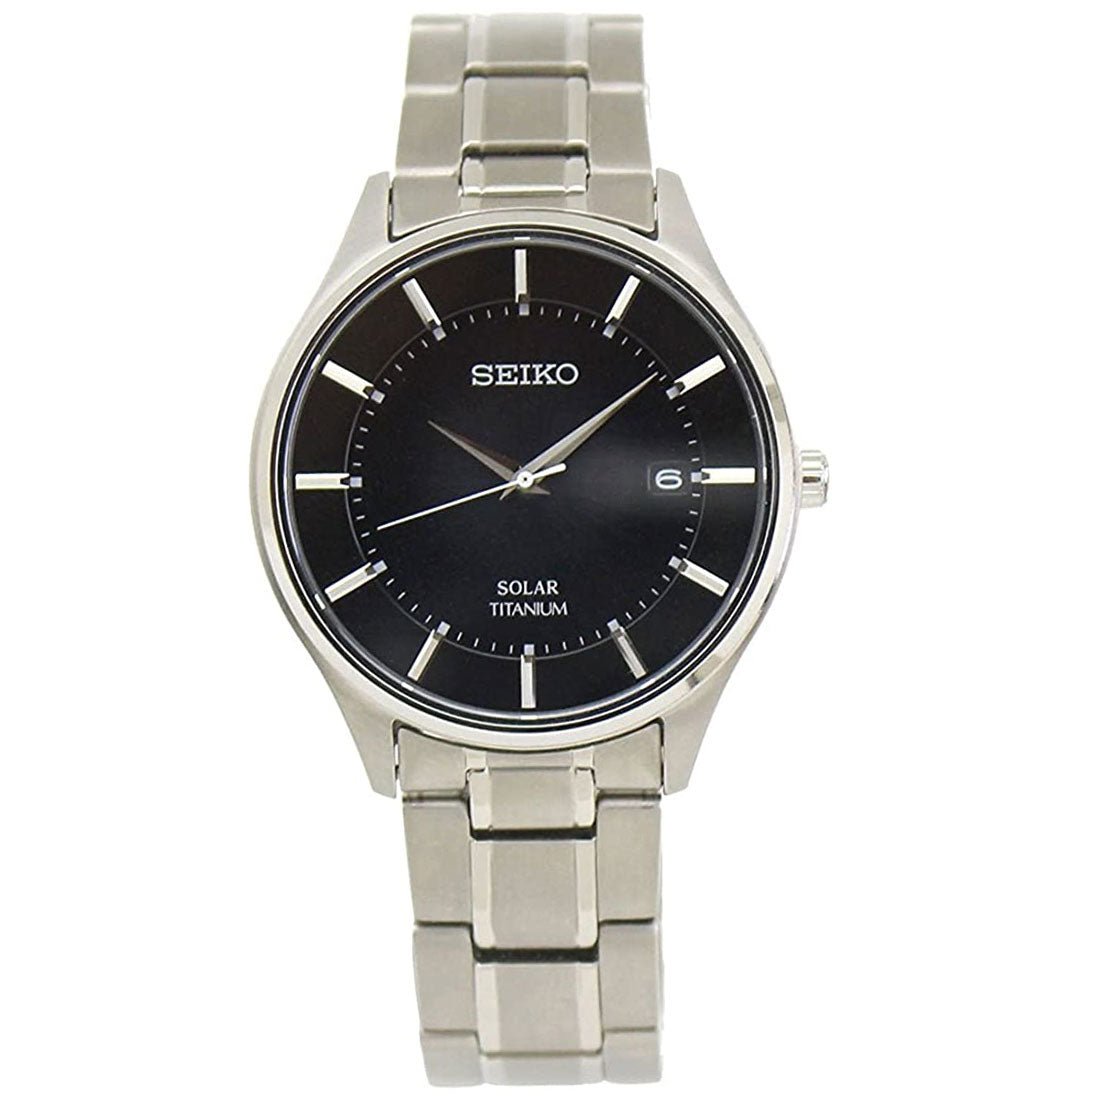 Seiko Selection Titanium JDM Watch SBPX103 -Seiko